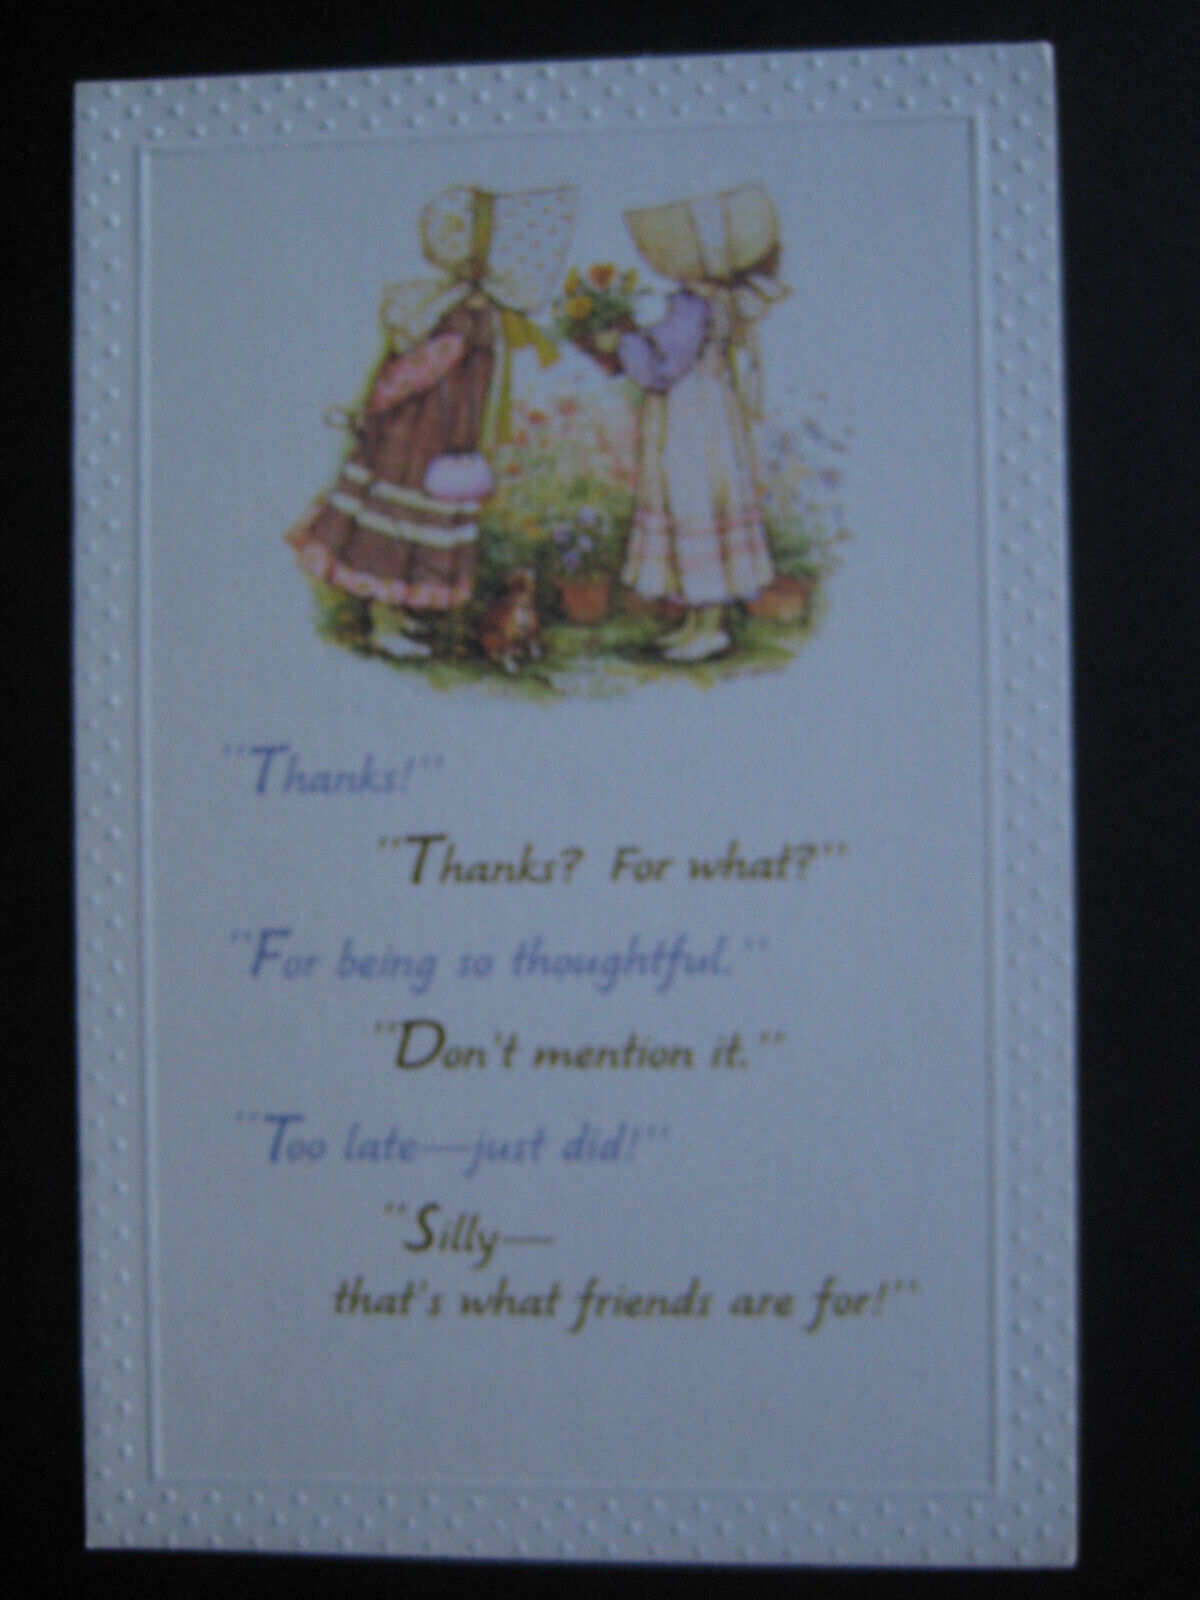 UNUSED 1979 vintage greeting card HOLLY HOBBIE FRIENDSHIP Girl w/ Flowers4Friend